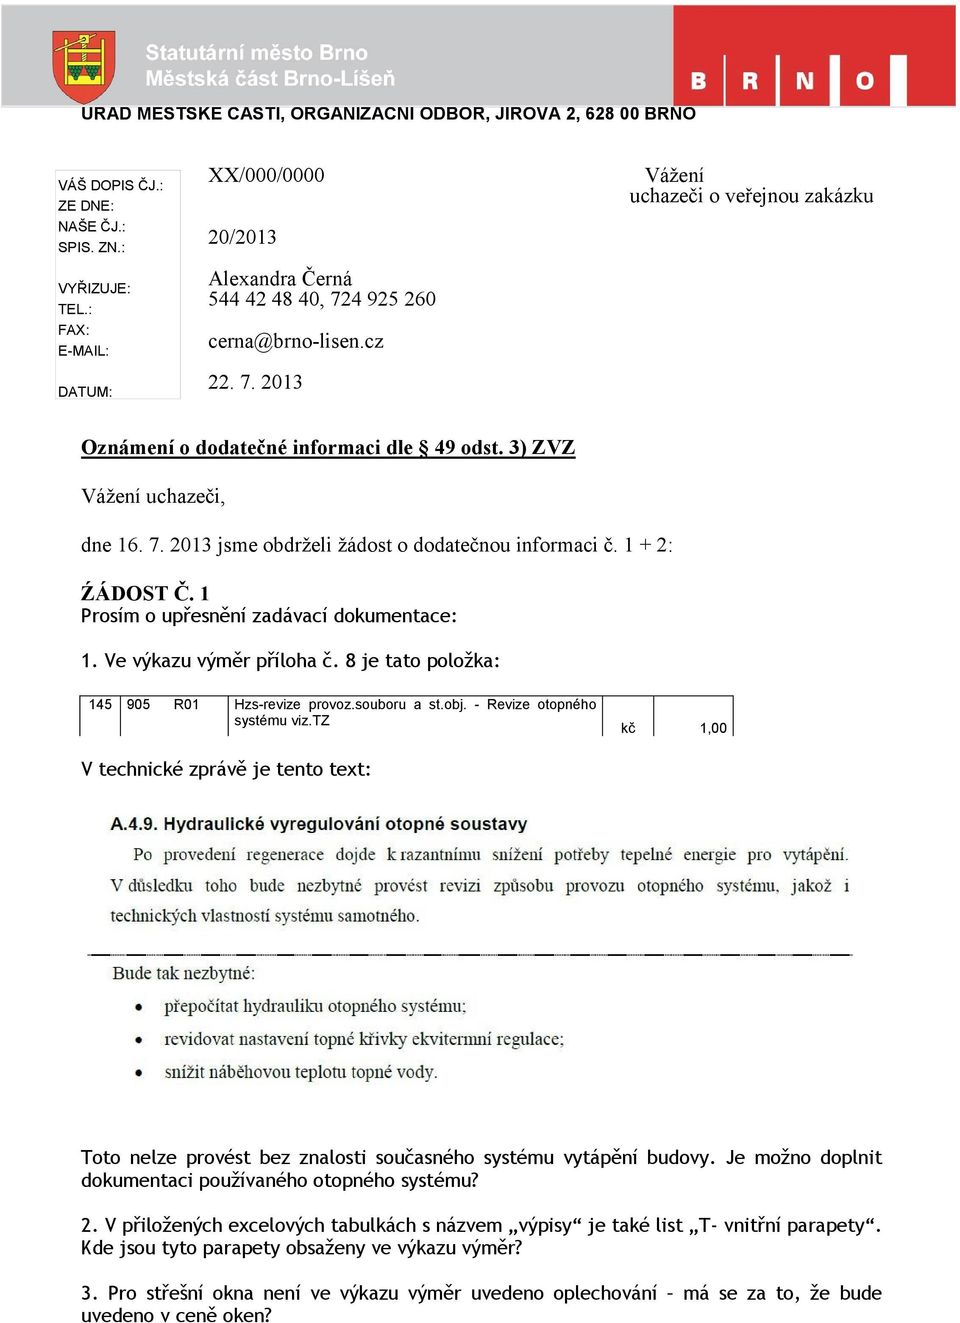 3) ZVZ Vážení uchazeči, dne 16. 7. 2013 jsme obdrželi žádost o dodatečnou informaci č. 1 + 2: ŹÁDOST Č. 1 Prosím o upřesnění zadávací dokumentace: 1. Ve výkazu výměr příloha č.